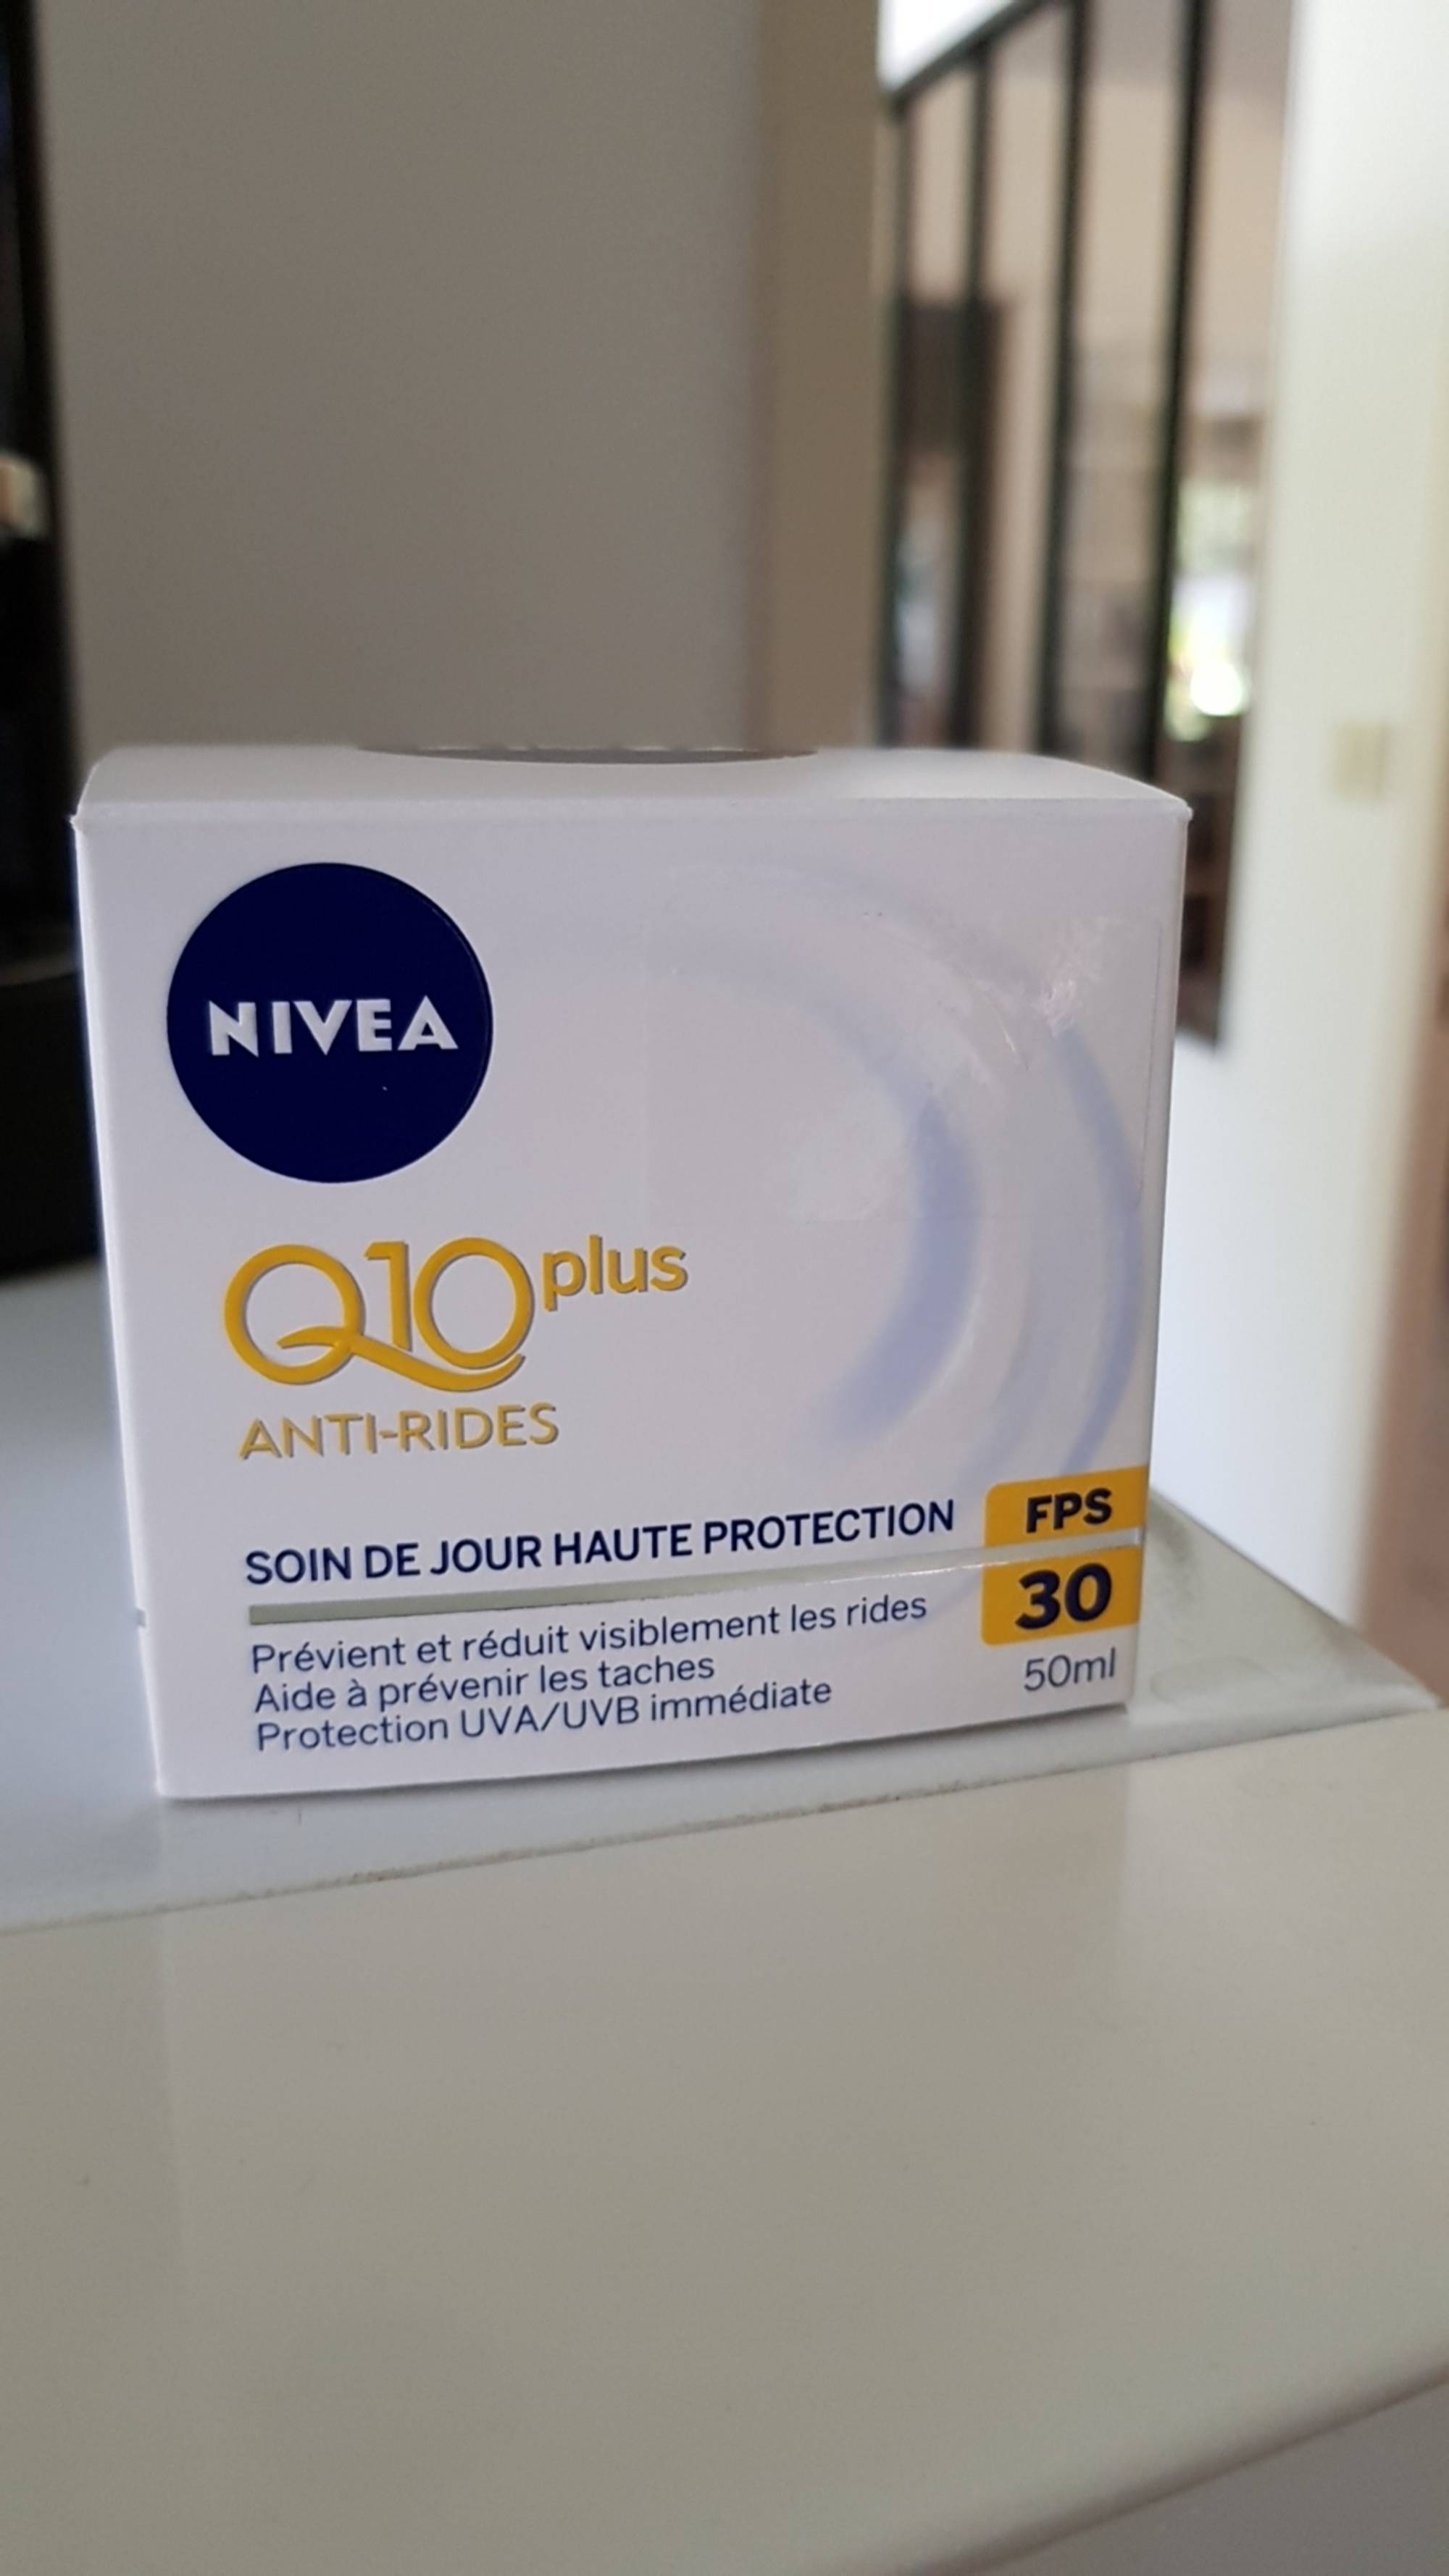 NIVEA - Q10 plus anti-rides - Soin de jour haute protection FPS 30